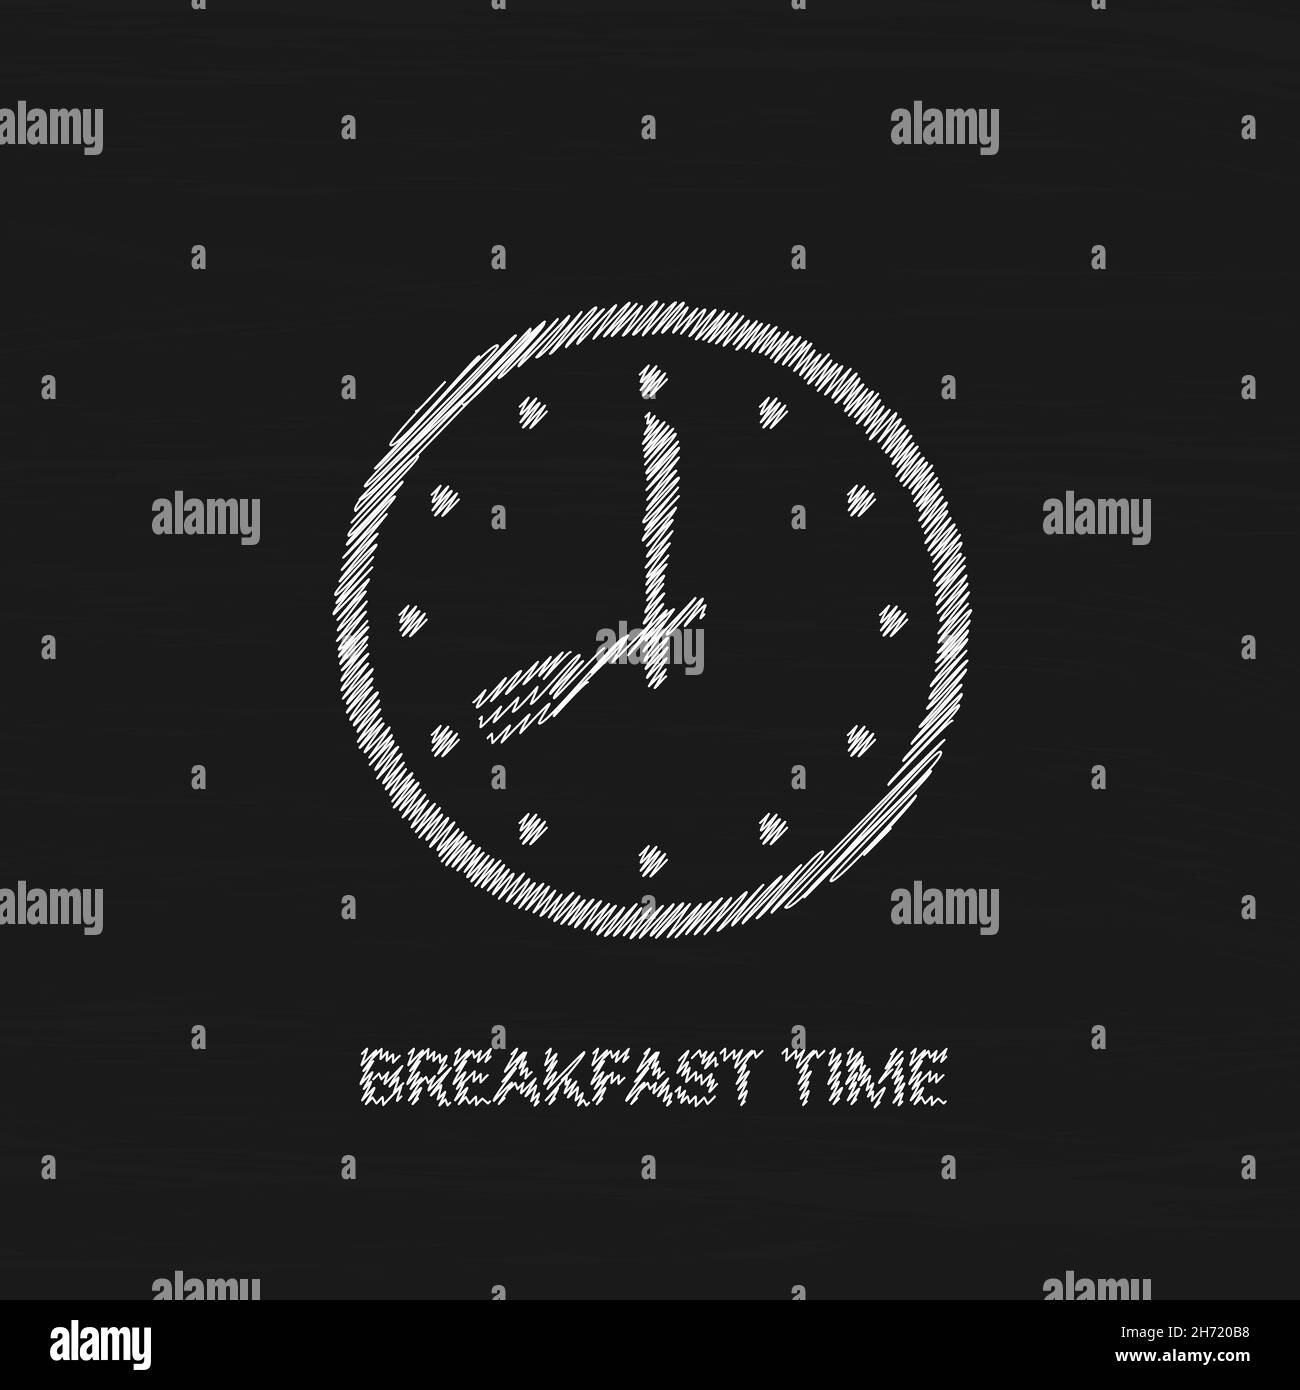 Icona del vettore dell'ora della colazione ora del cibo sull'orologio Illustrazione Vettoriale